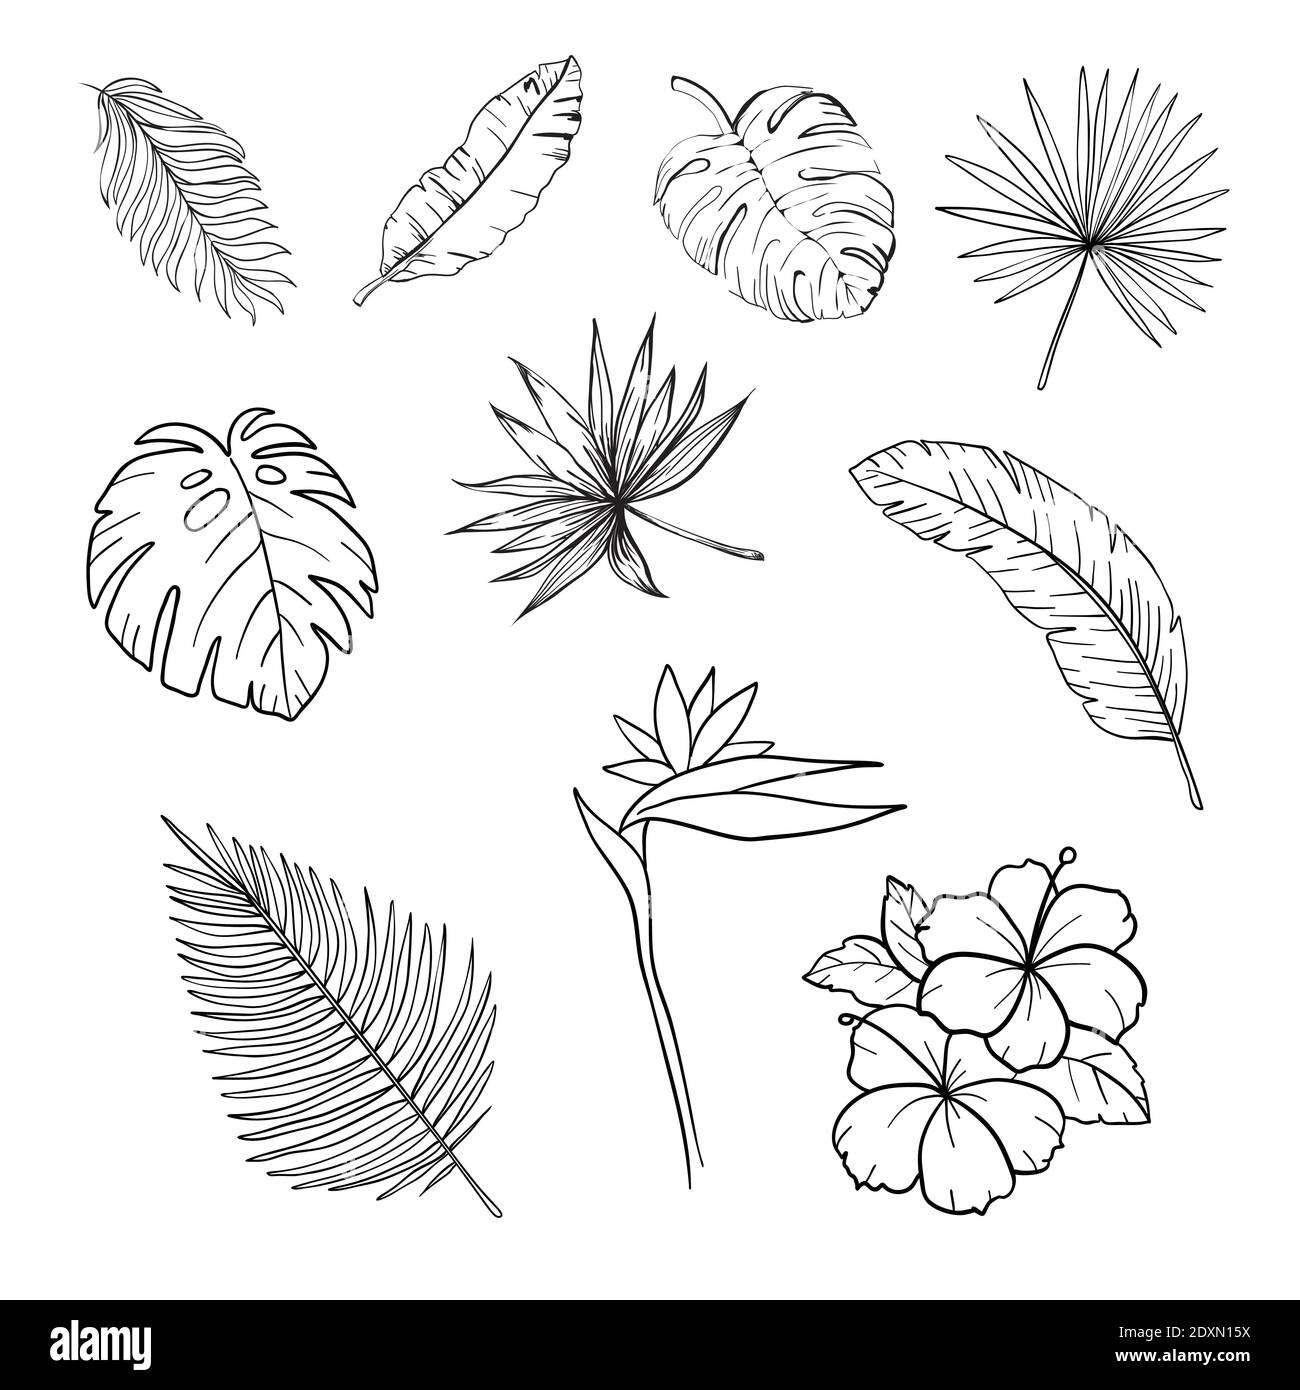 Ensemble de fleurs et de feuilles tropicales noires et blanches dessinées à la main illustration vectorielle isolée Illustration de Vecteur